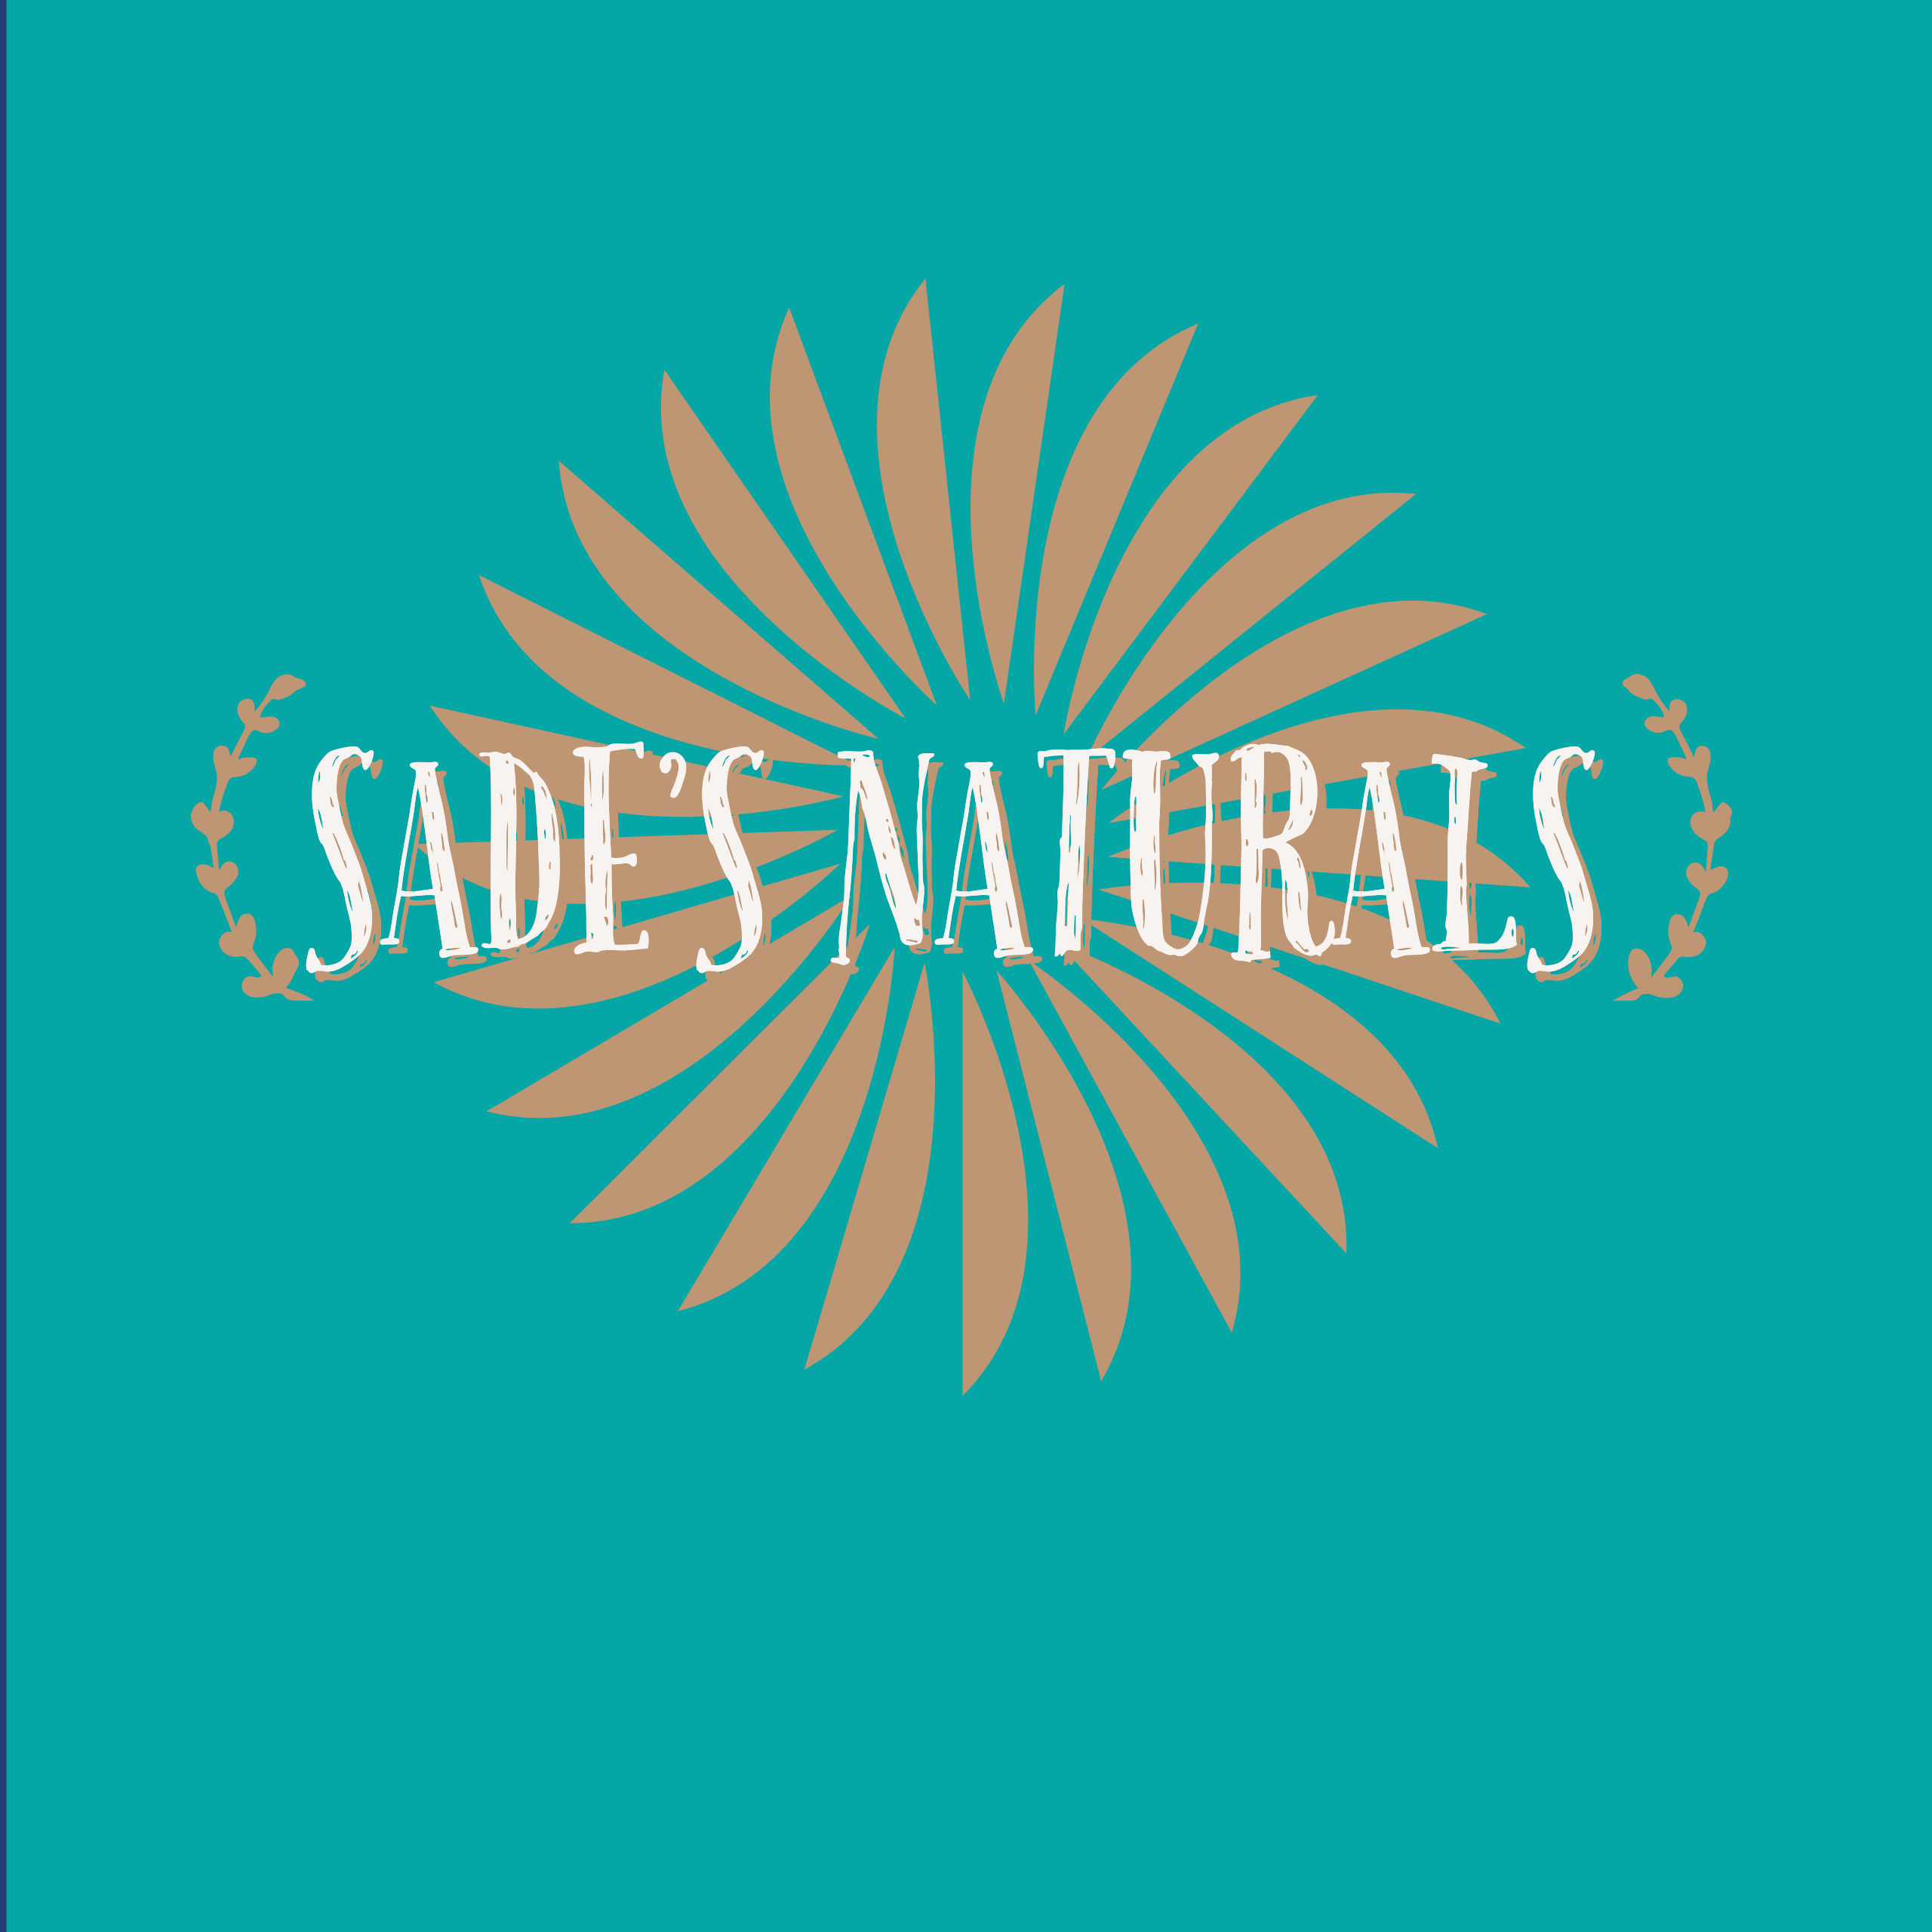 www.sadesnaturals.com